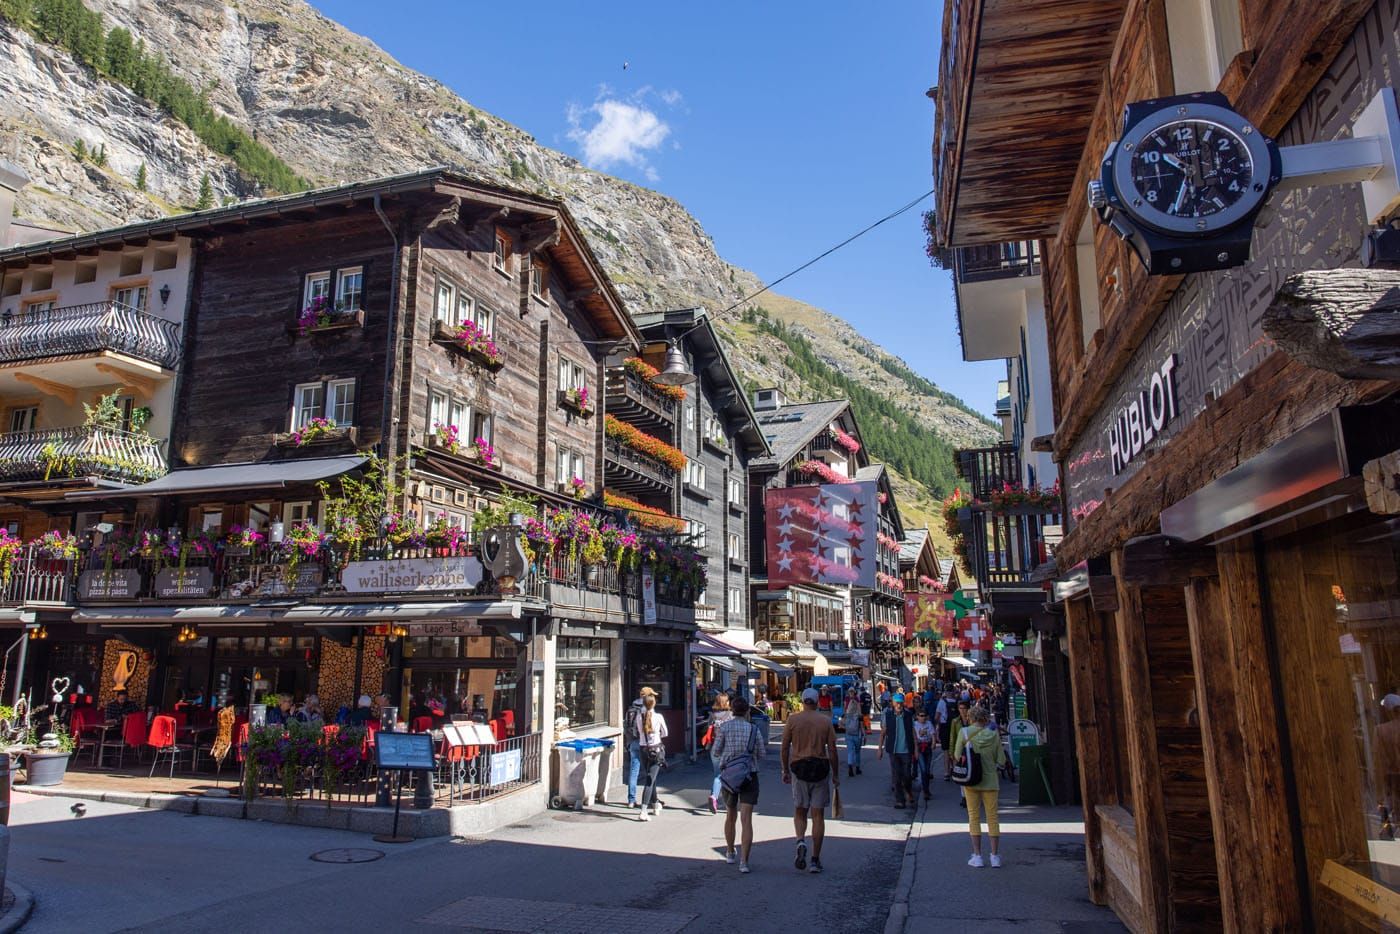 Things to Do in Zermatt